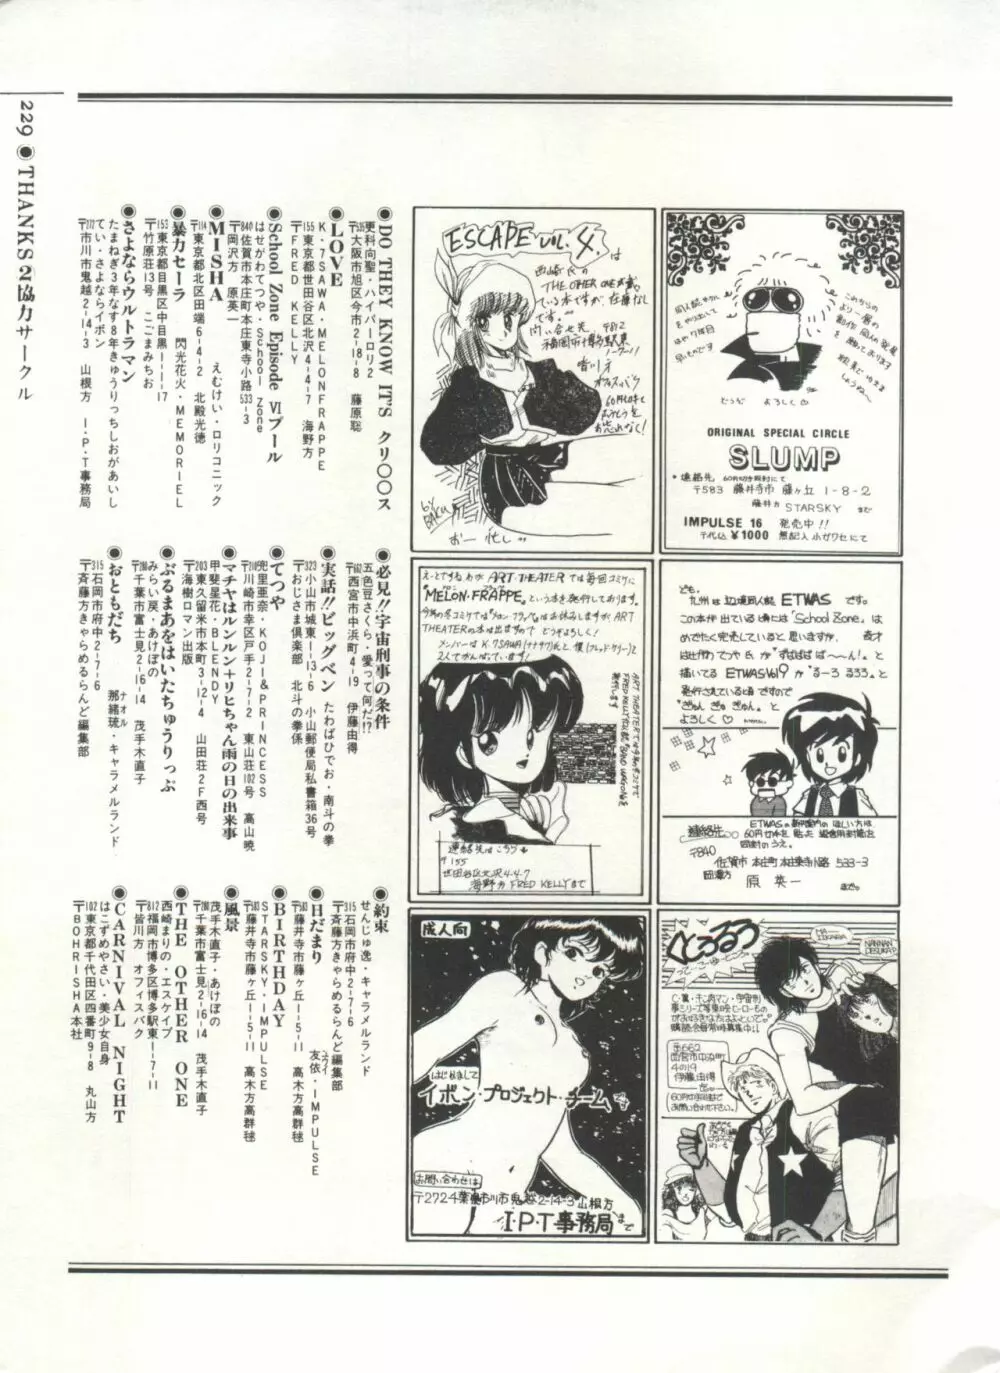 [Anthology] 美少女症候群(2) Lolita syndrome (よろず) 232ページ